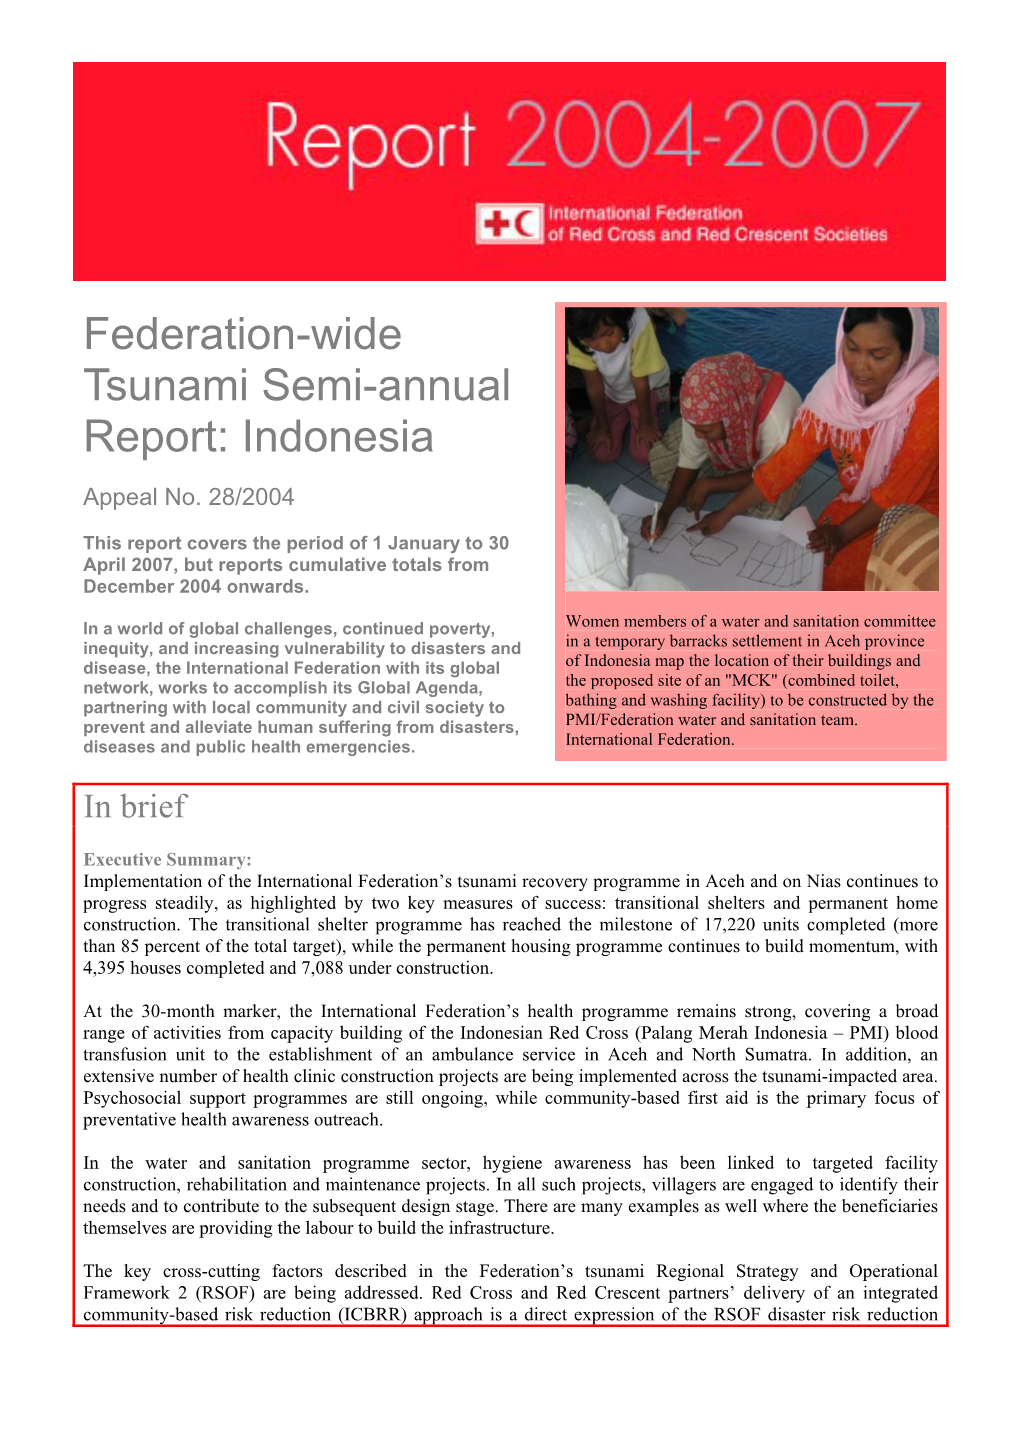 Federation-Wide Tsunami Semi-Annual Report: Indonesia